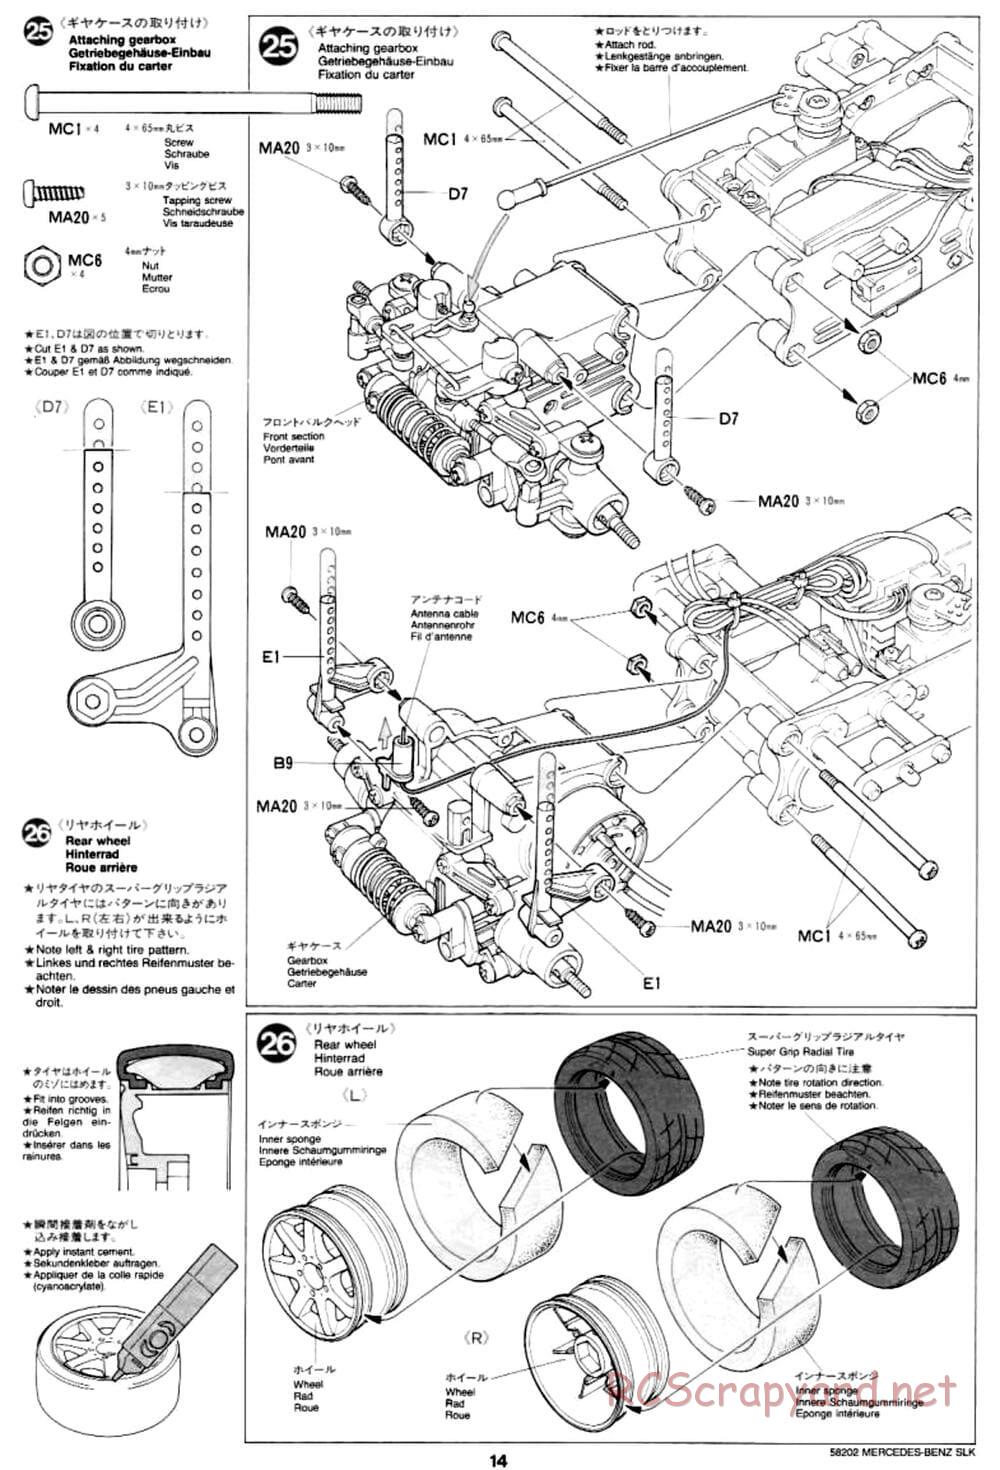 Tamiya - Mercedes-Benz SLK - M02L Chassis - Manual - Page 14